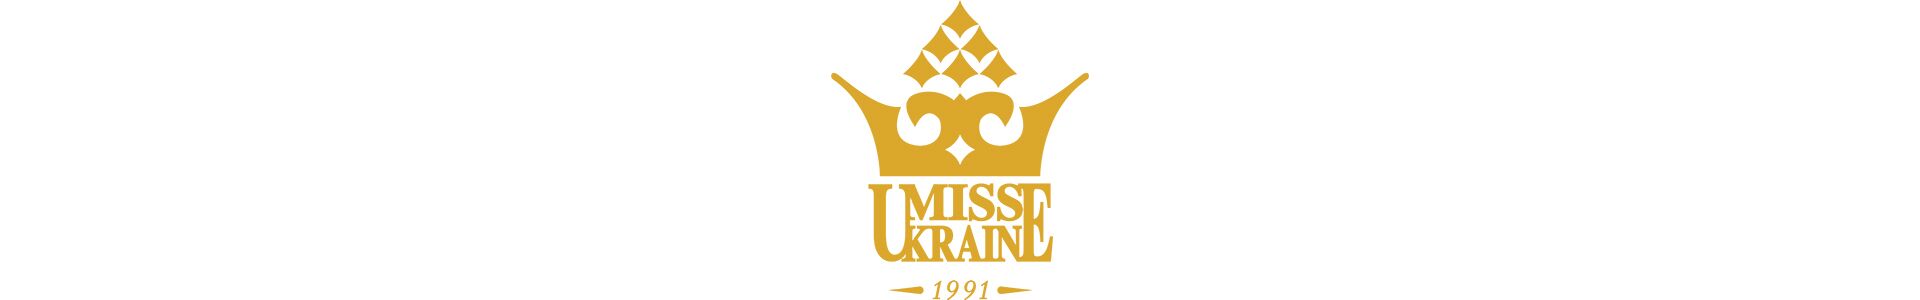 Відео візитка Міс Україна 2016 Олександри Кучеренко для Miss World 2016